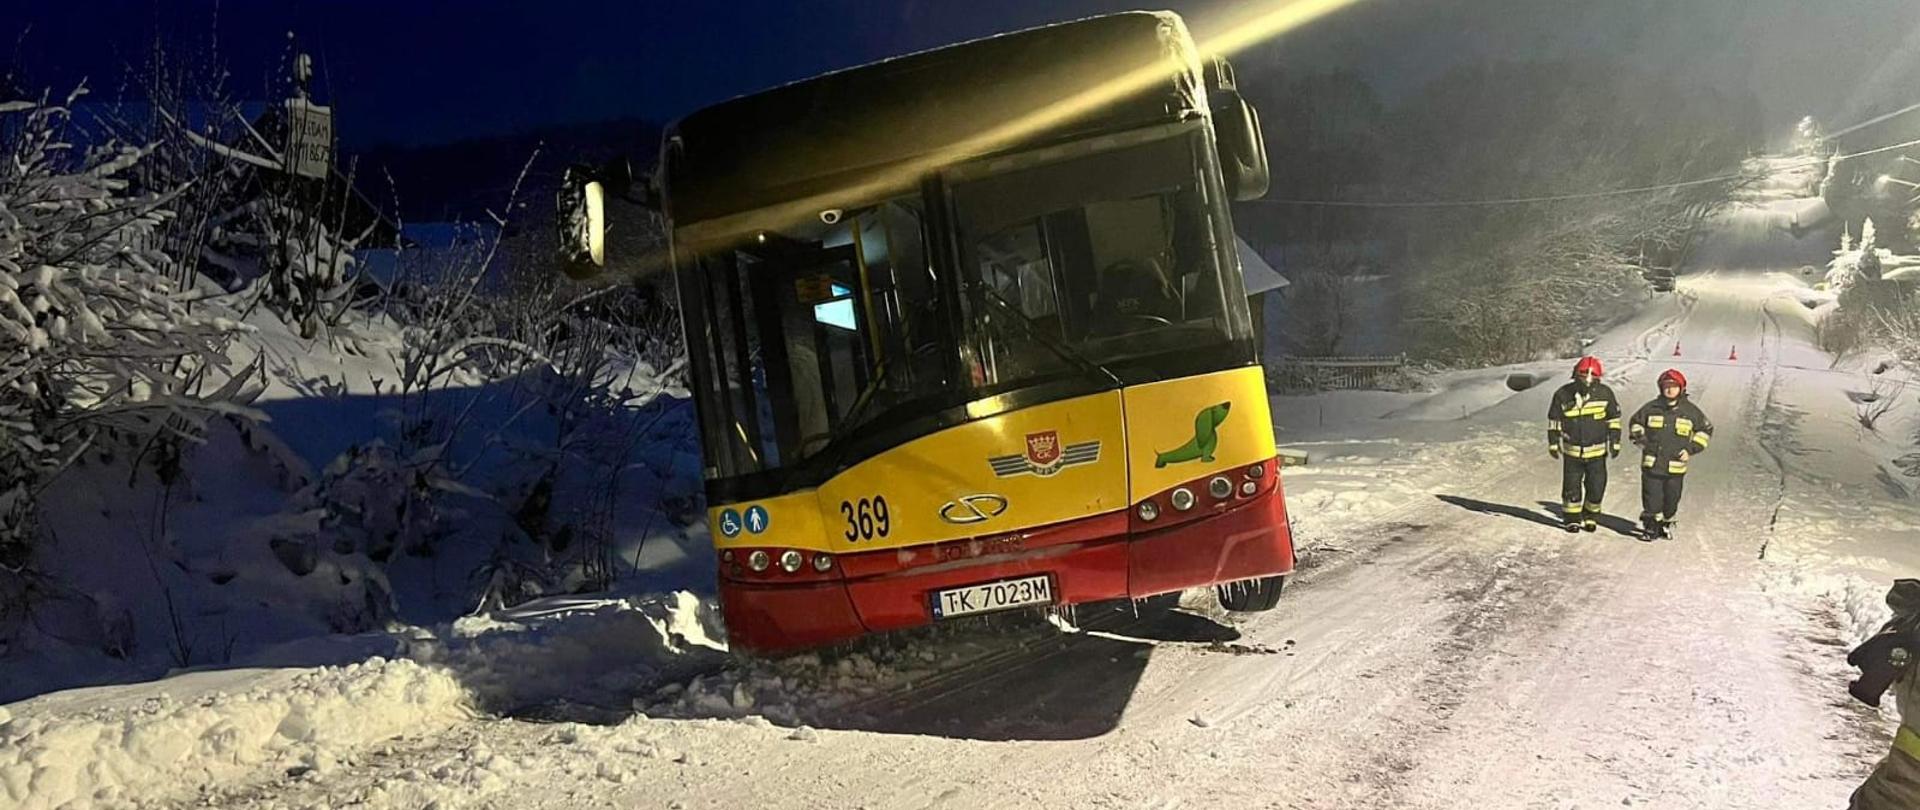 Autobus MZK Kielce wpadł do przydrożnego rowu z powodu śliskiej drogi pokrytej śniegiem i lodem. Tył autobusu znajduje się w rowie, a przód jest lekko uniesiony ponad drogę. Pod górkę w kierunku autobusu idą dwaj strażacy.